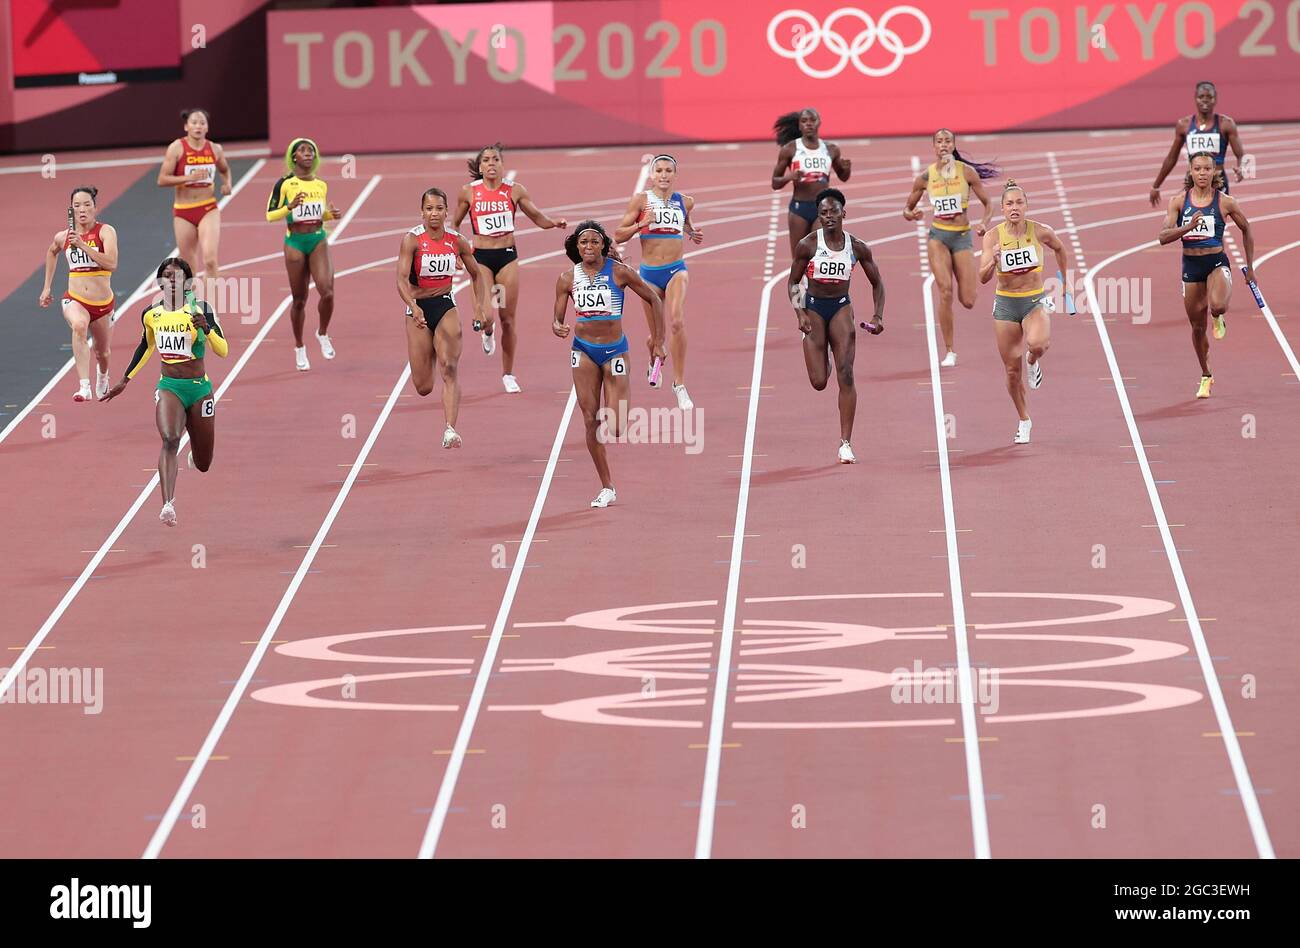 Tokio, Japan. August 2021. Athleten treten beim 4x100-m-Finale der Frauen bei den Olympischen Spielen 2020 in Tokio, Japan, am 6. August 2021 an. Quelle: Jia Yuchen/Xinhua/Alamy Live News Stockfoto